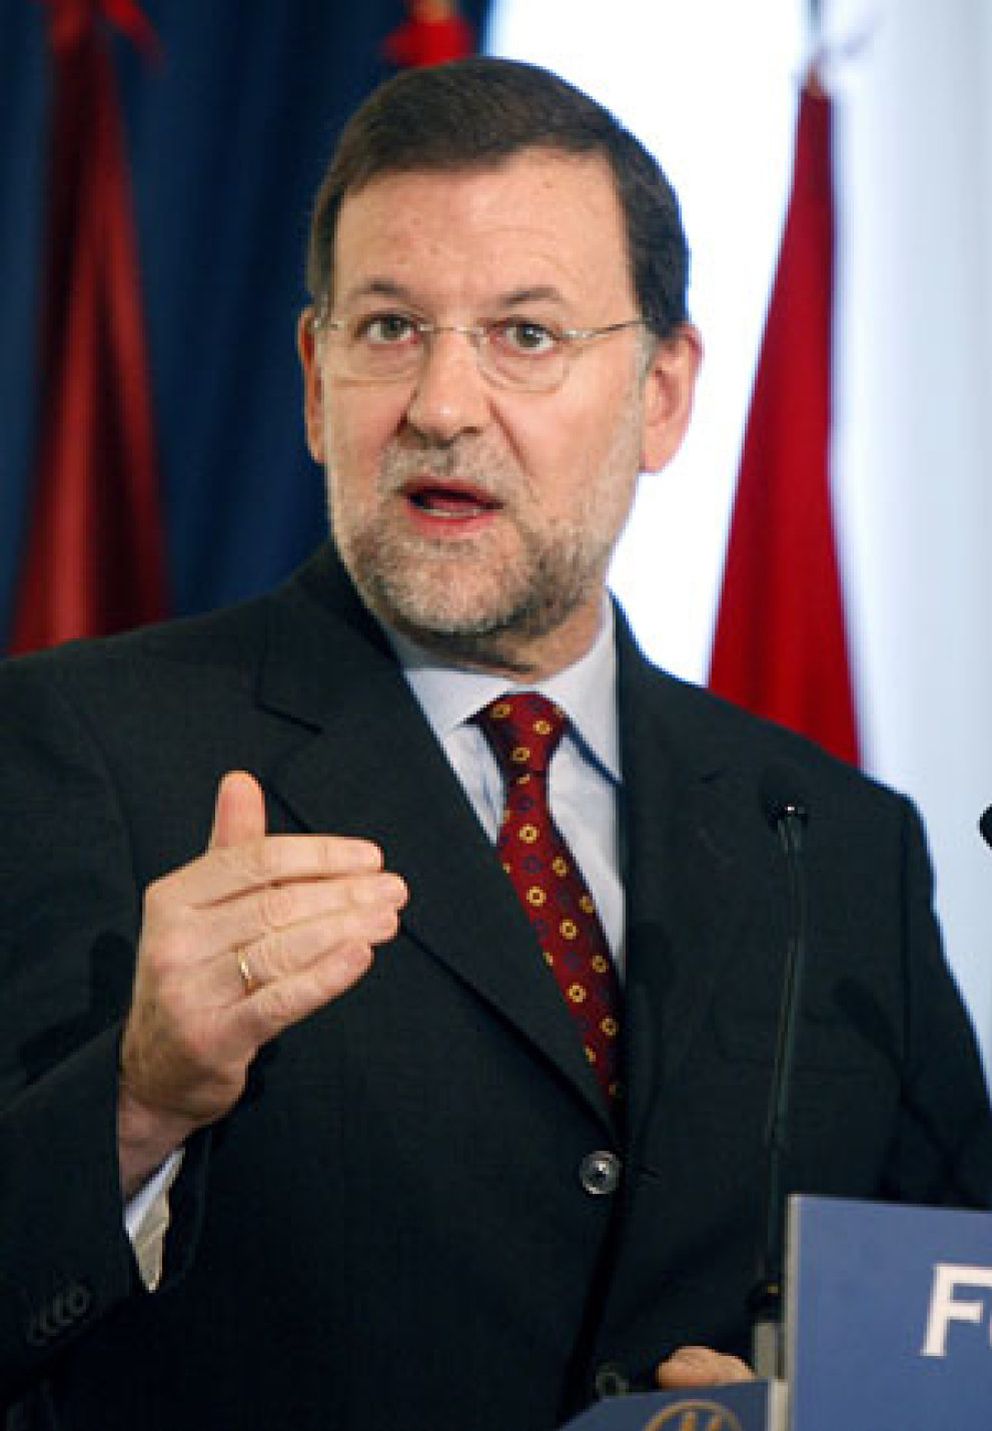 Foto: Rajoy dispuesto a integrar a sus críticos: "No me sobra absolutamente nadie y me hacen falta todos"